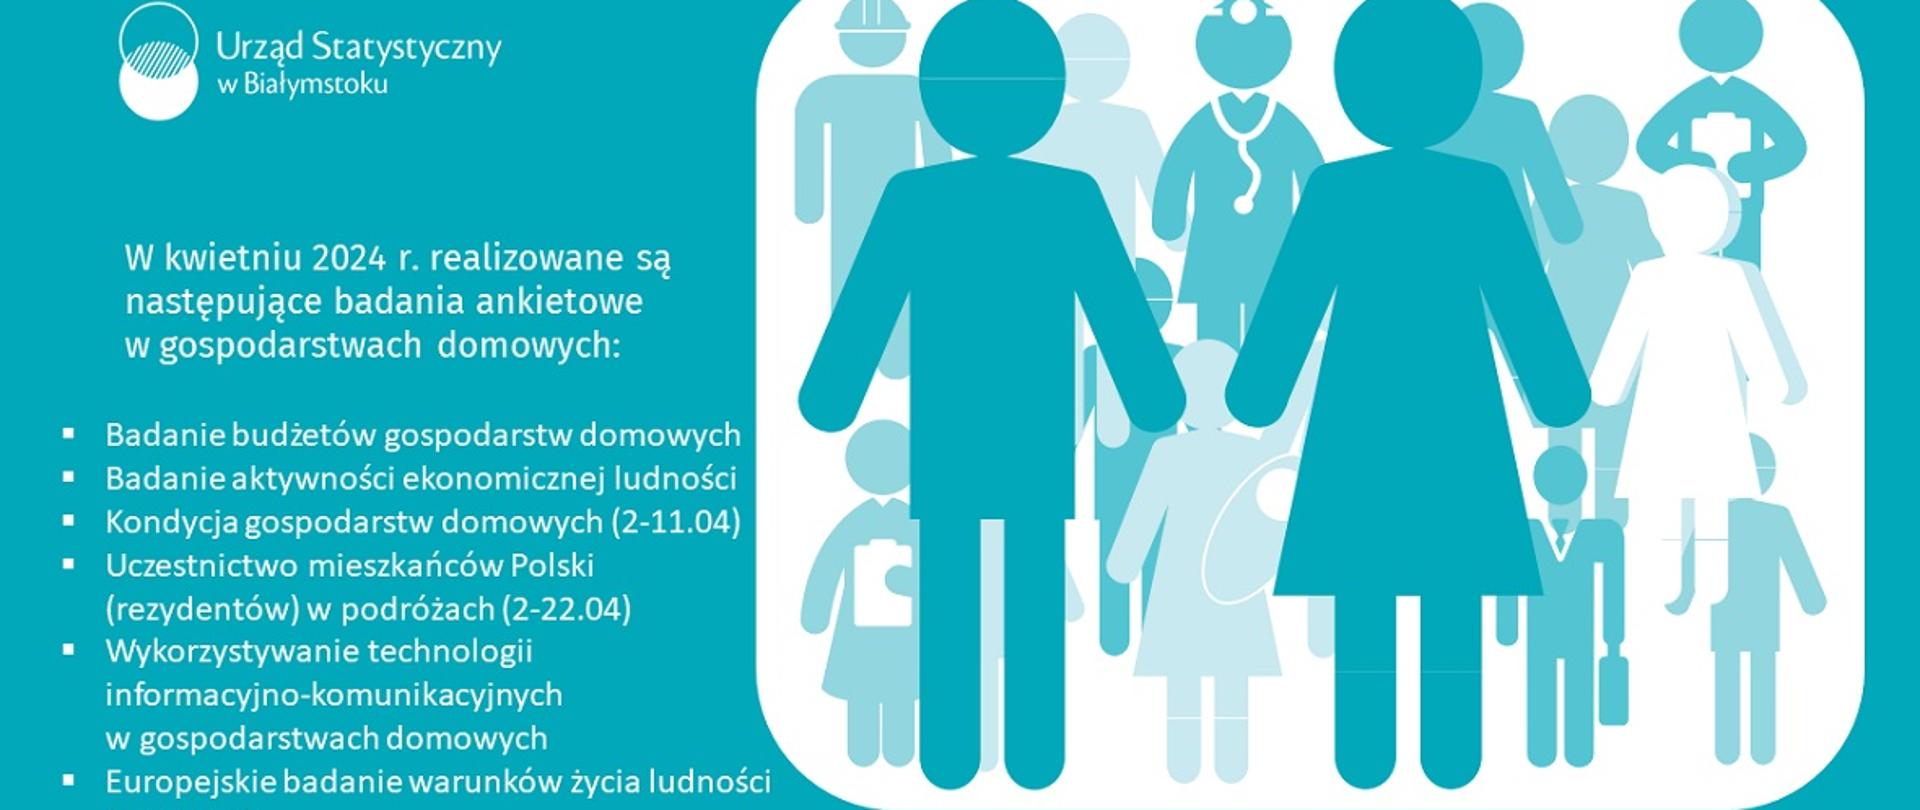 W kwietniu 2024 r. realizowane są następujące badania ankietowe w gospodarstwach domowych:
Badanie budżetów gospodarstw domowych
Badanie aktywności ekonomicznej ludności
Kondycja gospodarstw domowych (2-11.04)
Uczestnictwo mieszkańców Polski (rezydentów) w podróżach (2-22.04)
Wykorzystywanie technologii informacyjno-komunikacyjnych w gospodarstwach domowych
Europejskie badanie warunków życia ludności (od 22.04)